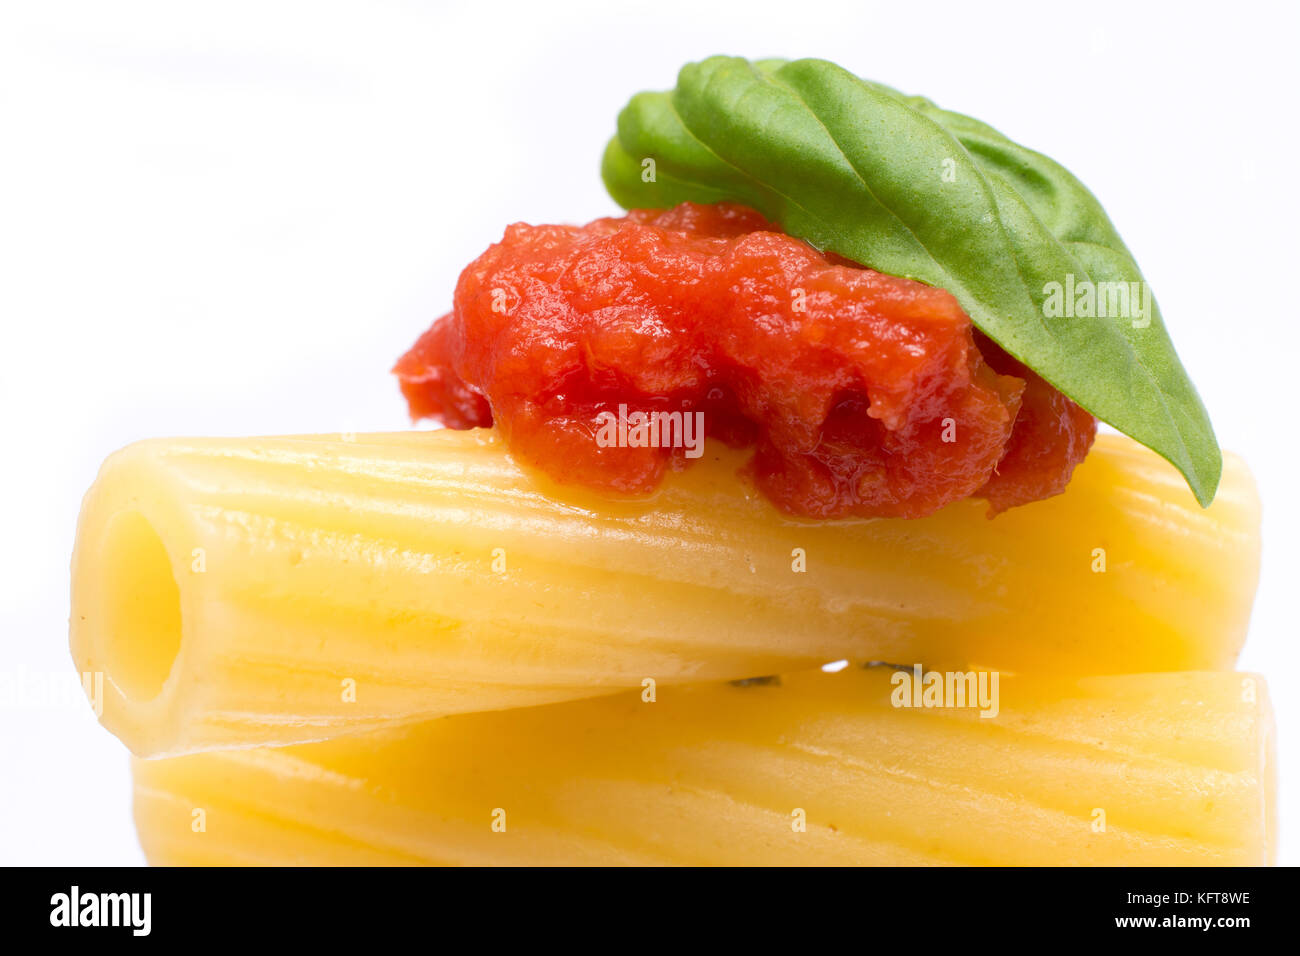 La pasta in bianco sullo sfondo. rigatoni, pomodoro e basilico sulla forcella. cucina italiana concept Foto Stock